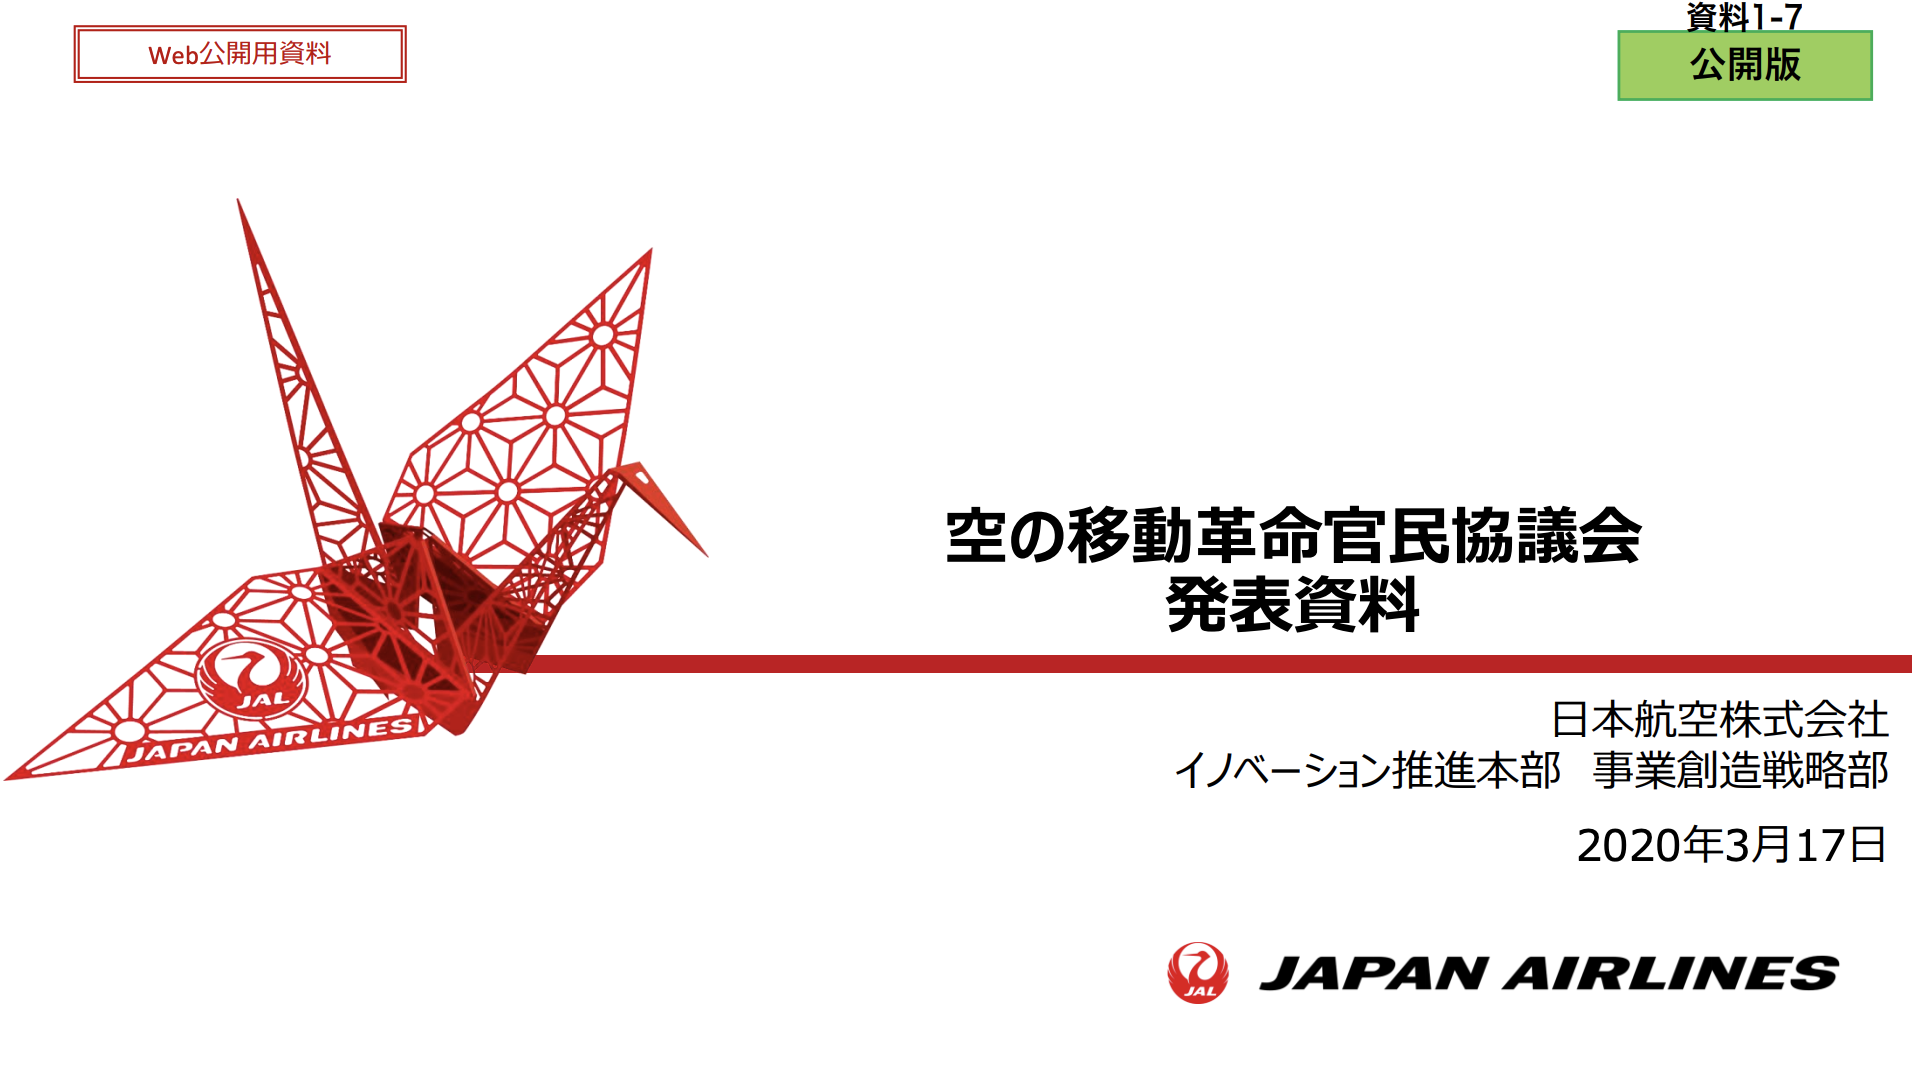 【資料解説】「日本航空×空飛ぶクルマ」、想定シナリオが判明